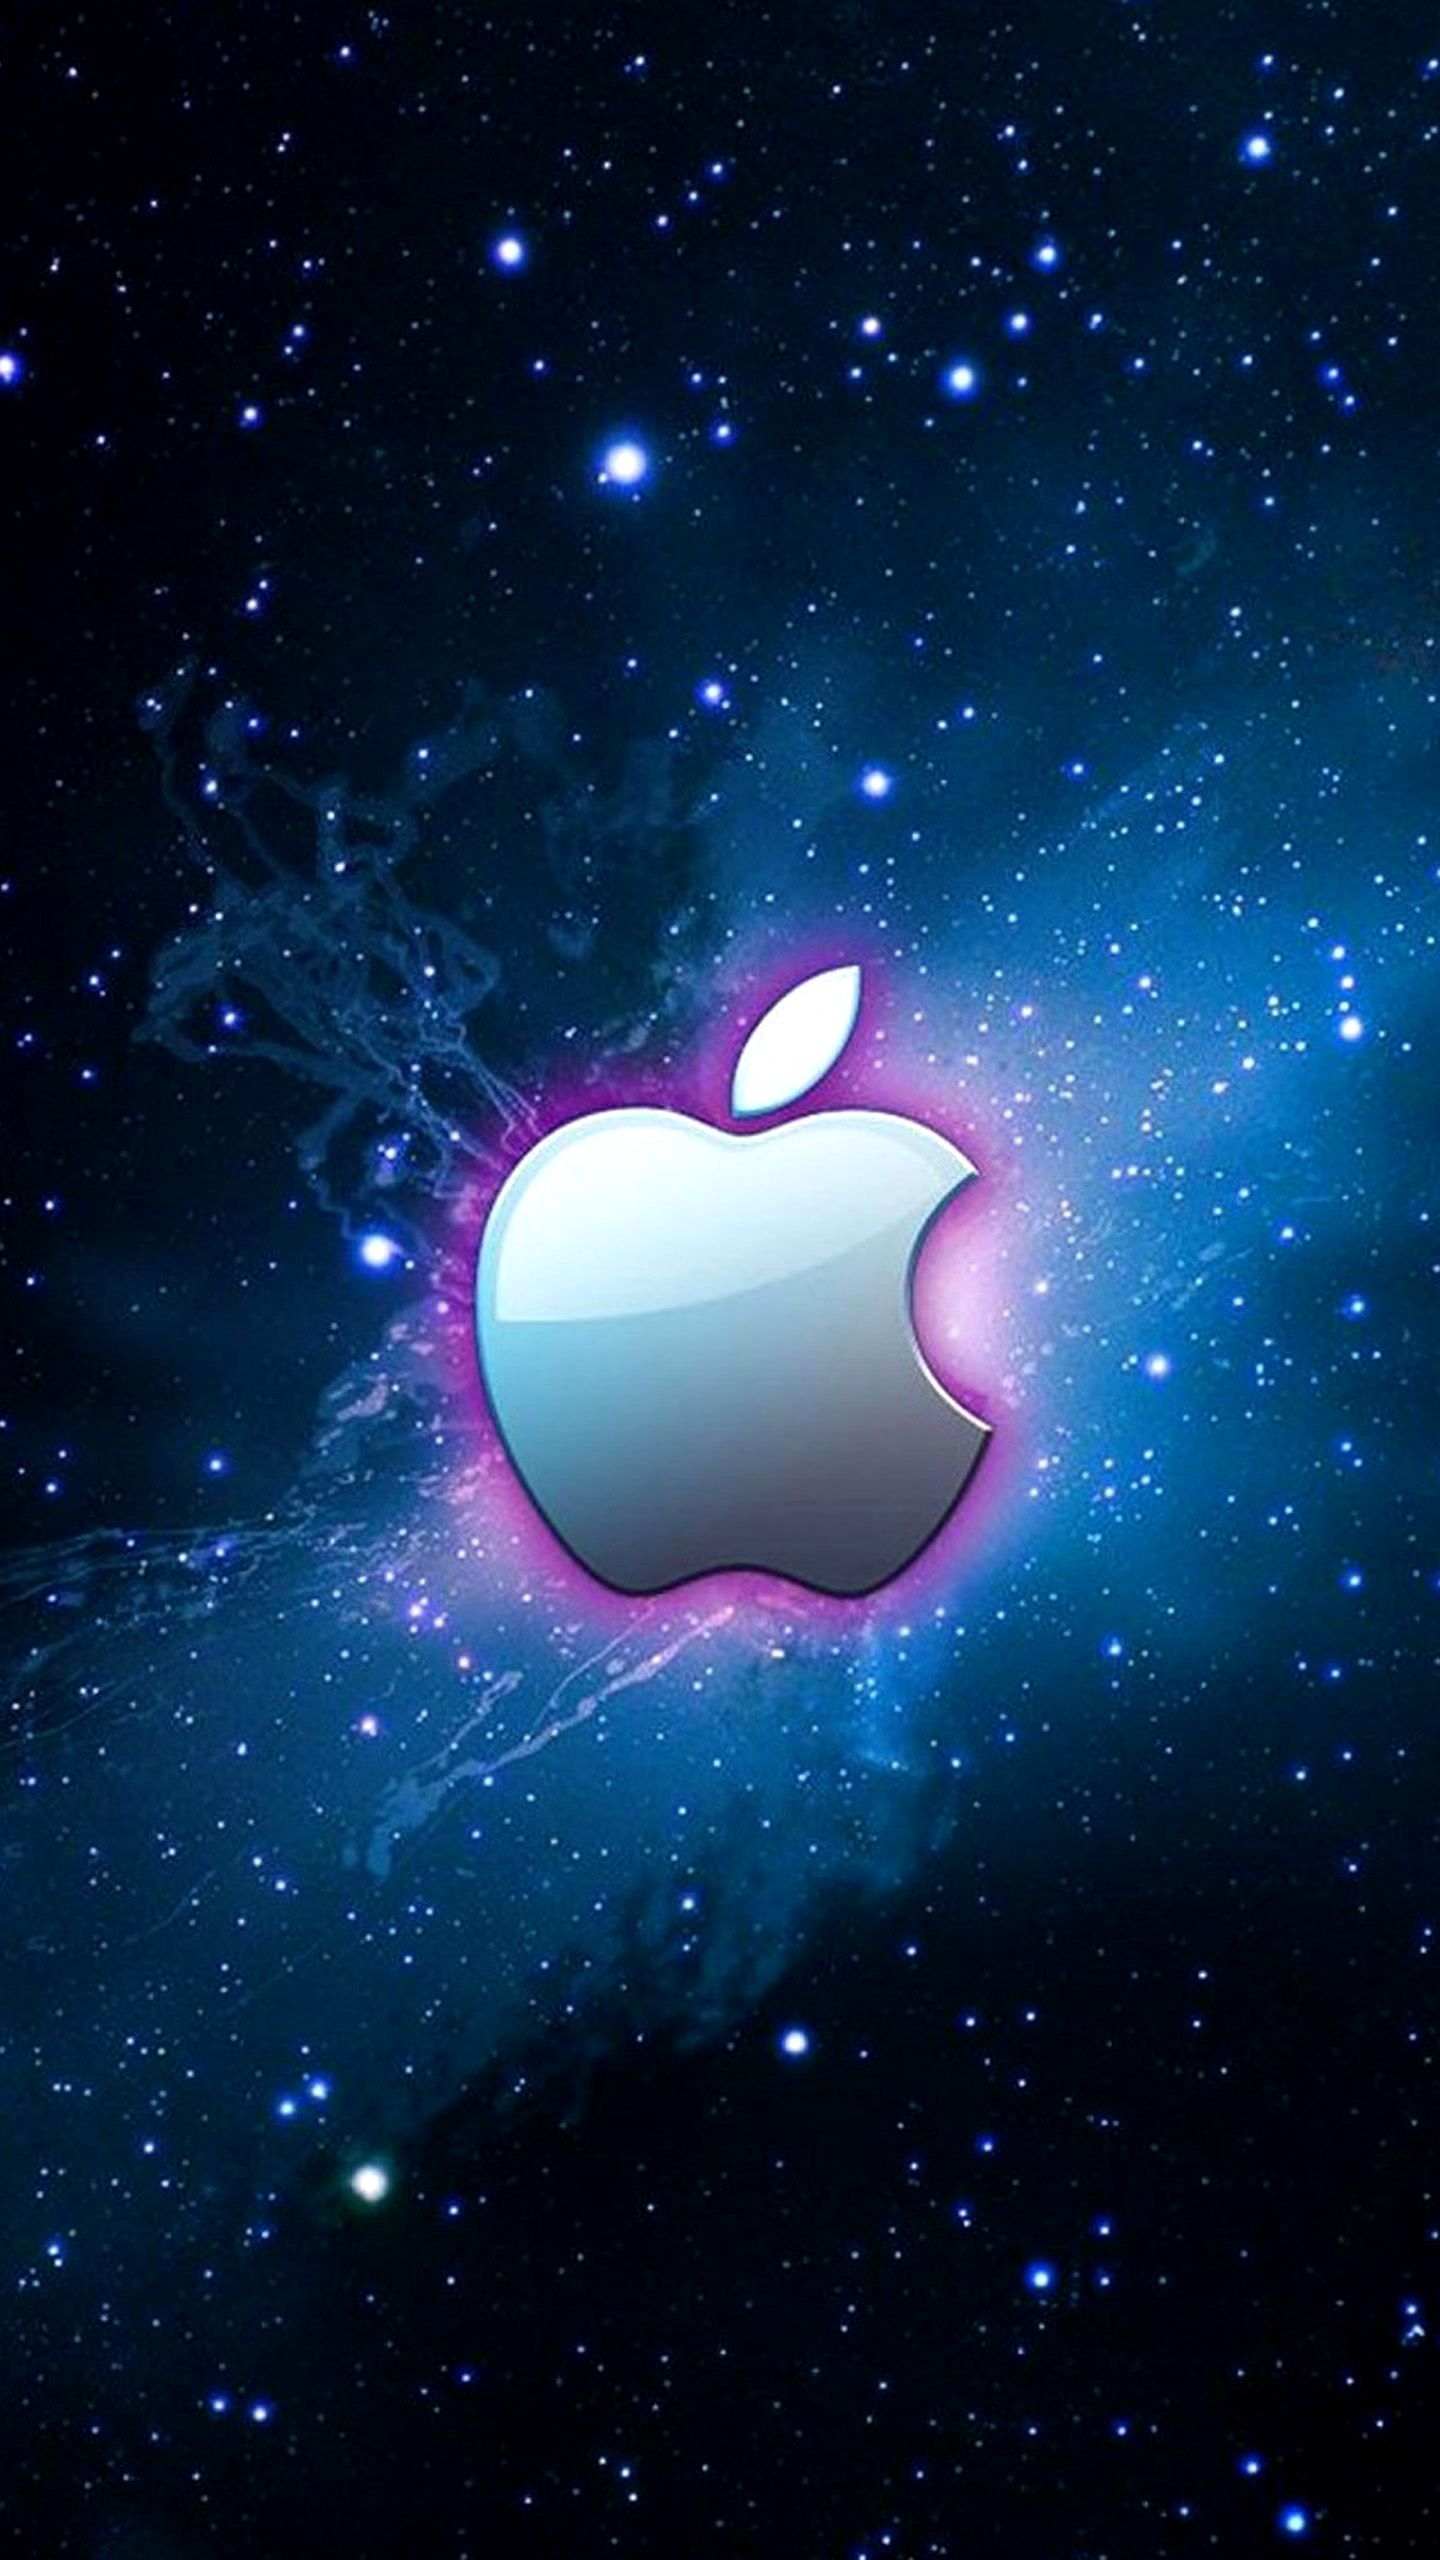 Apple 4K Logo Art Wallpapers